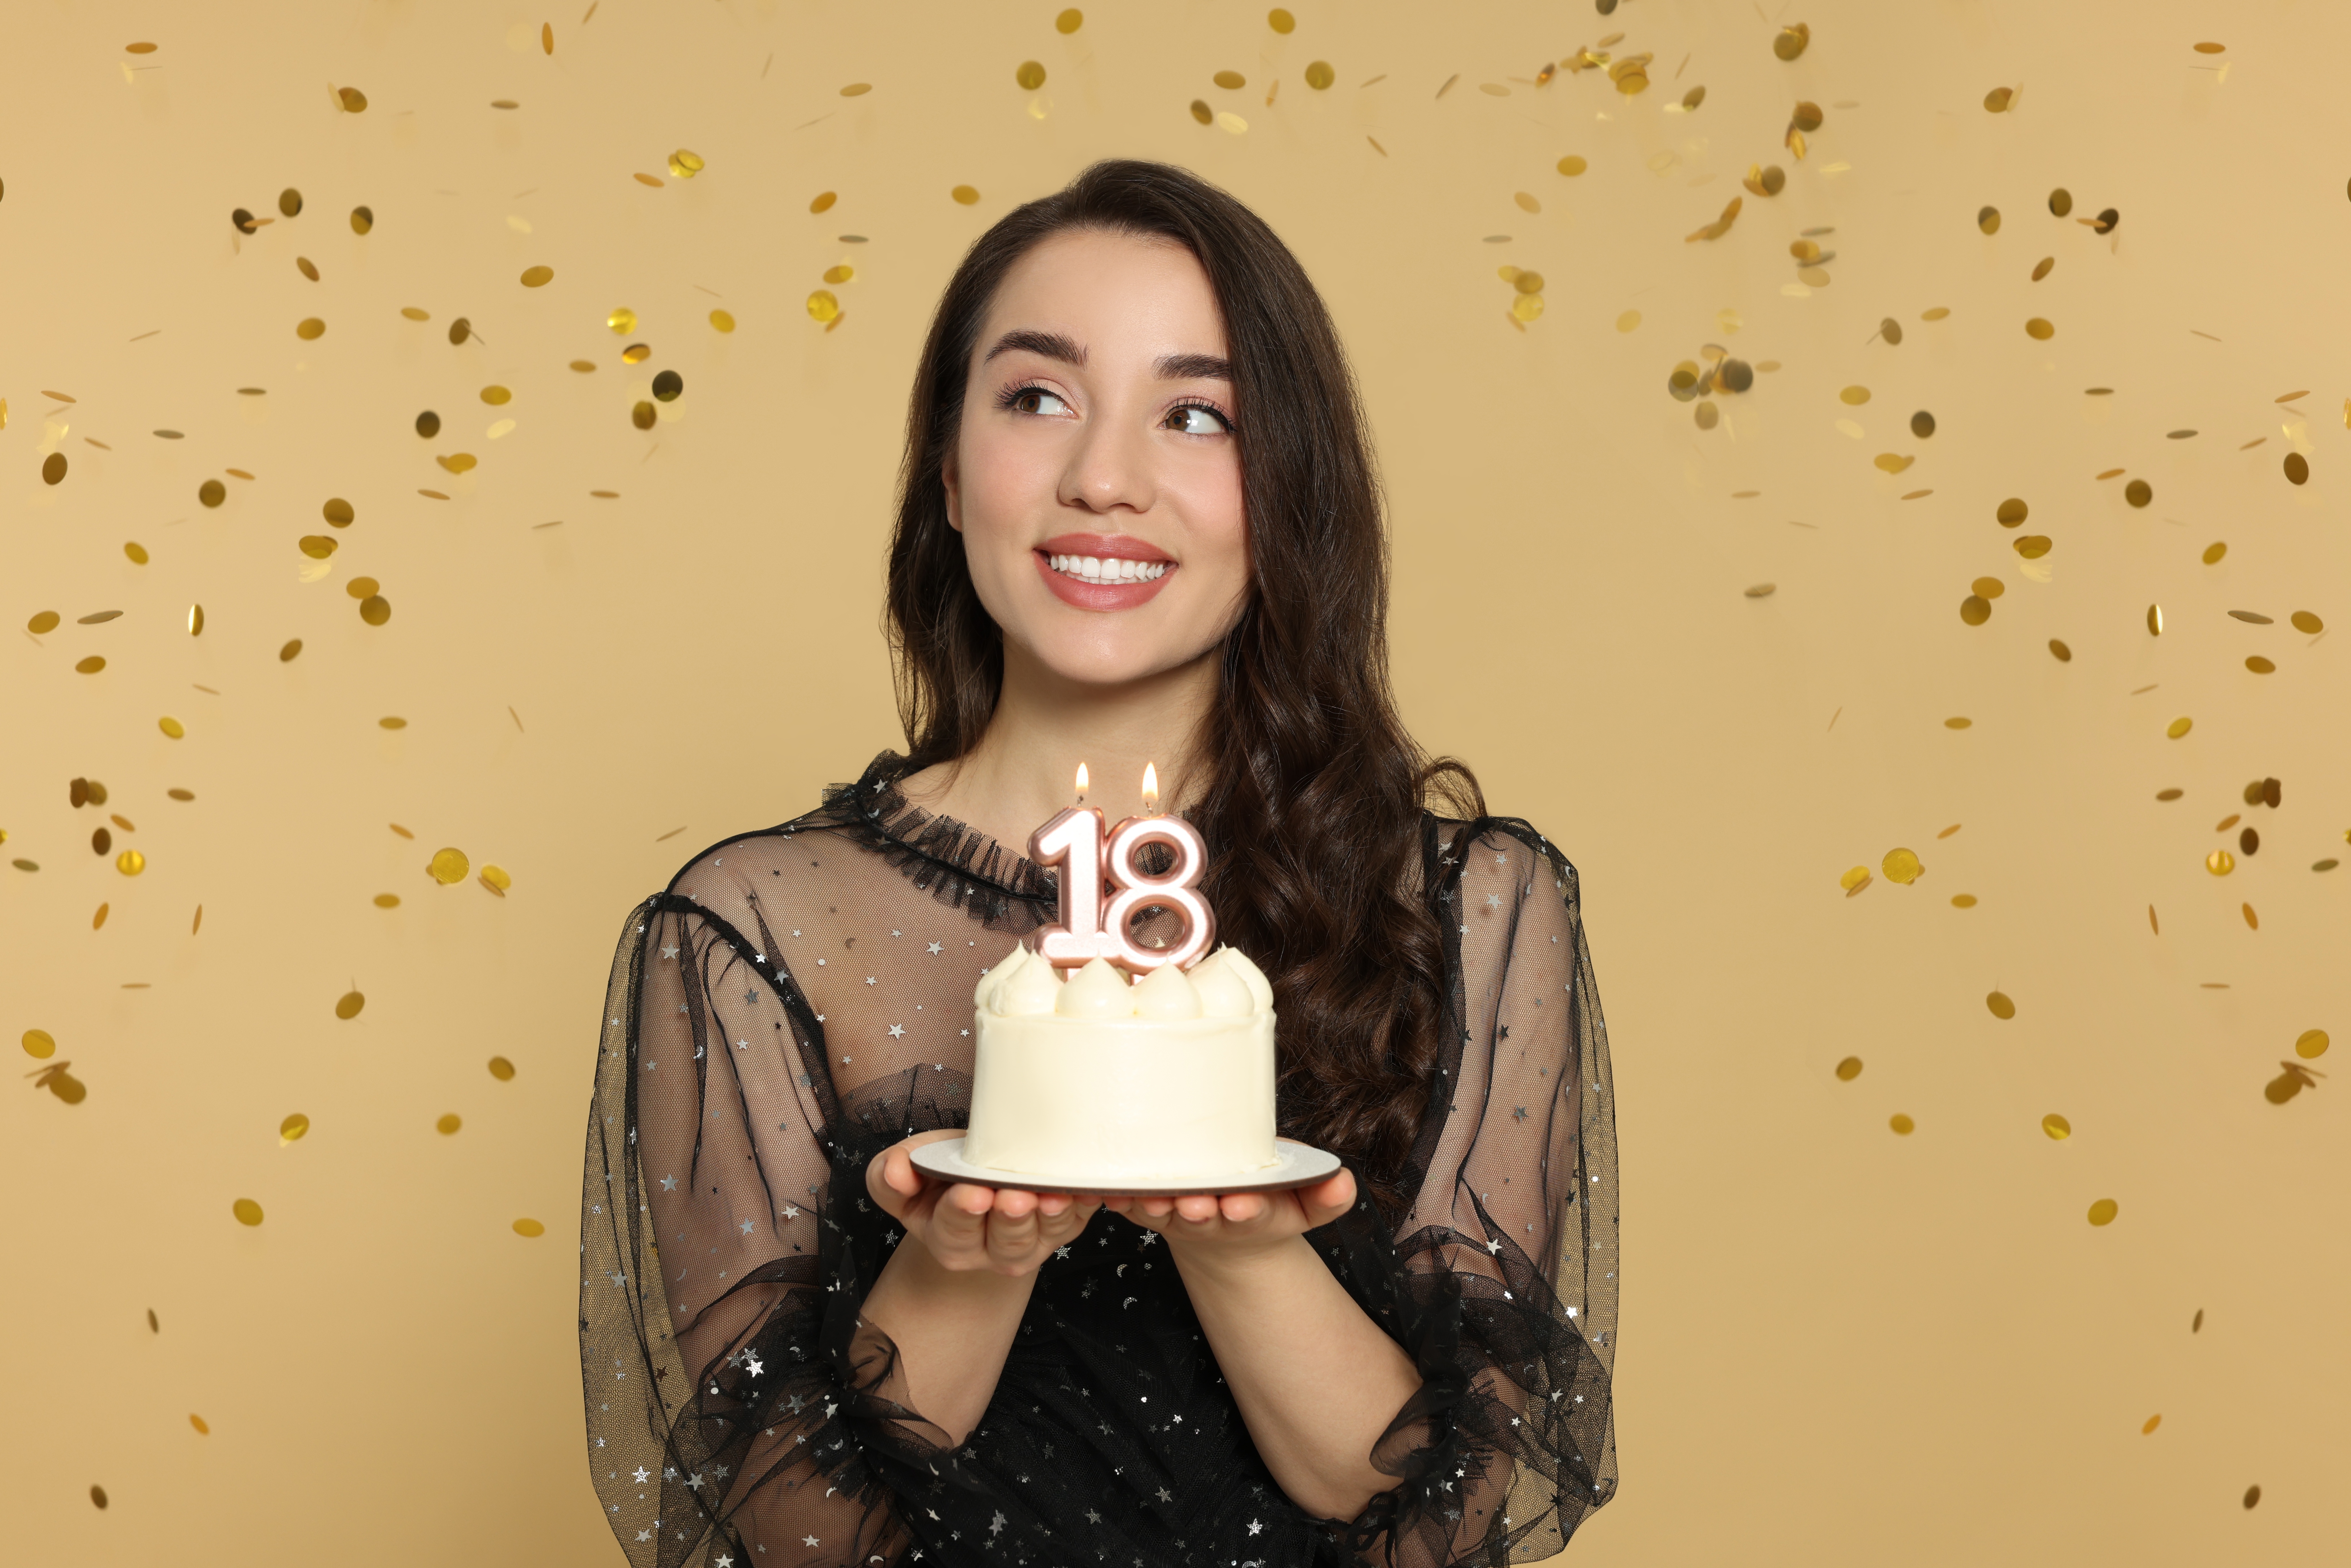 Joven sosteniendo su pastel de 18 cumpleaños | Foto: Shutterstock